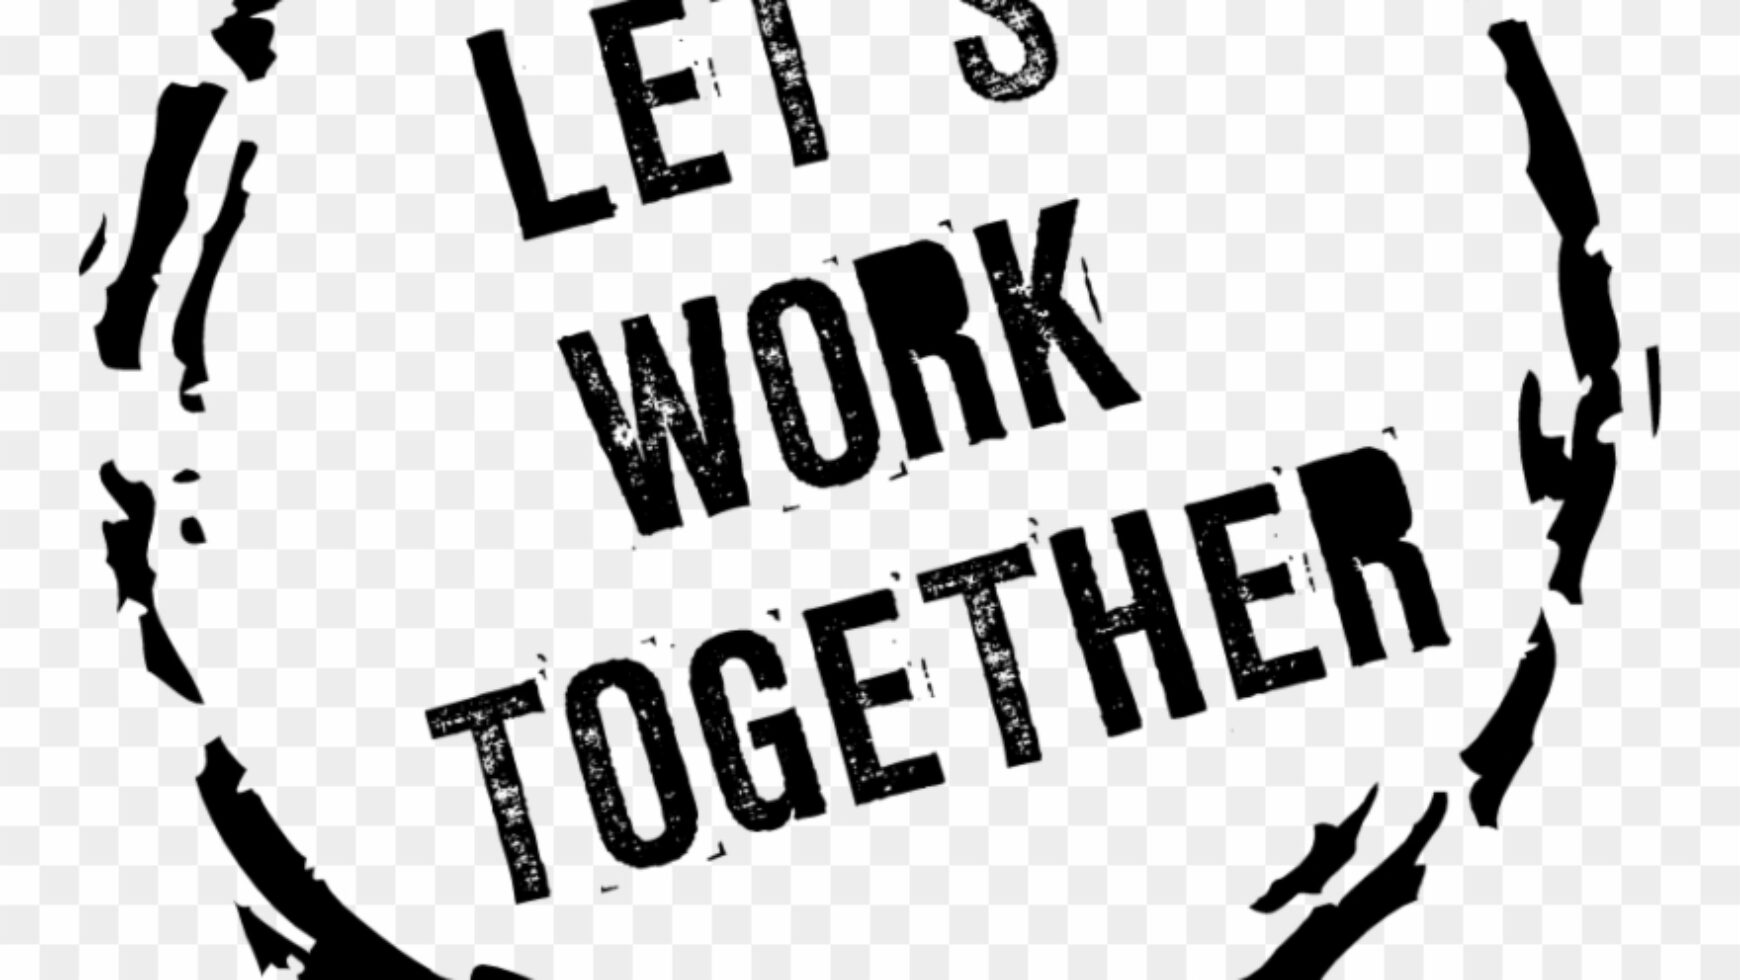 Let’s Work Together